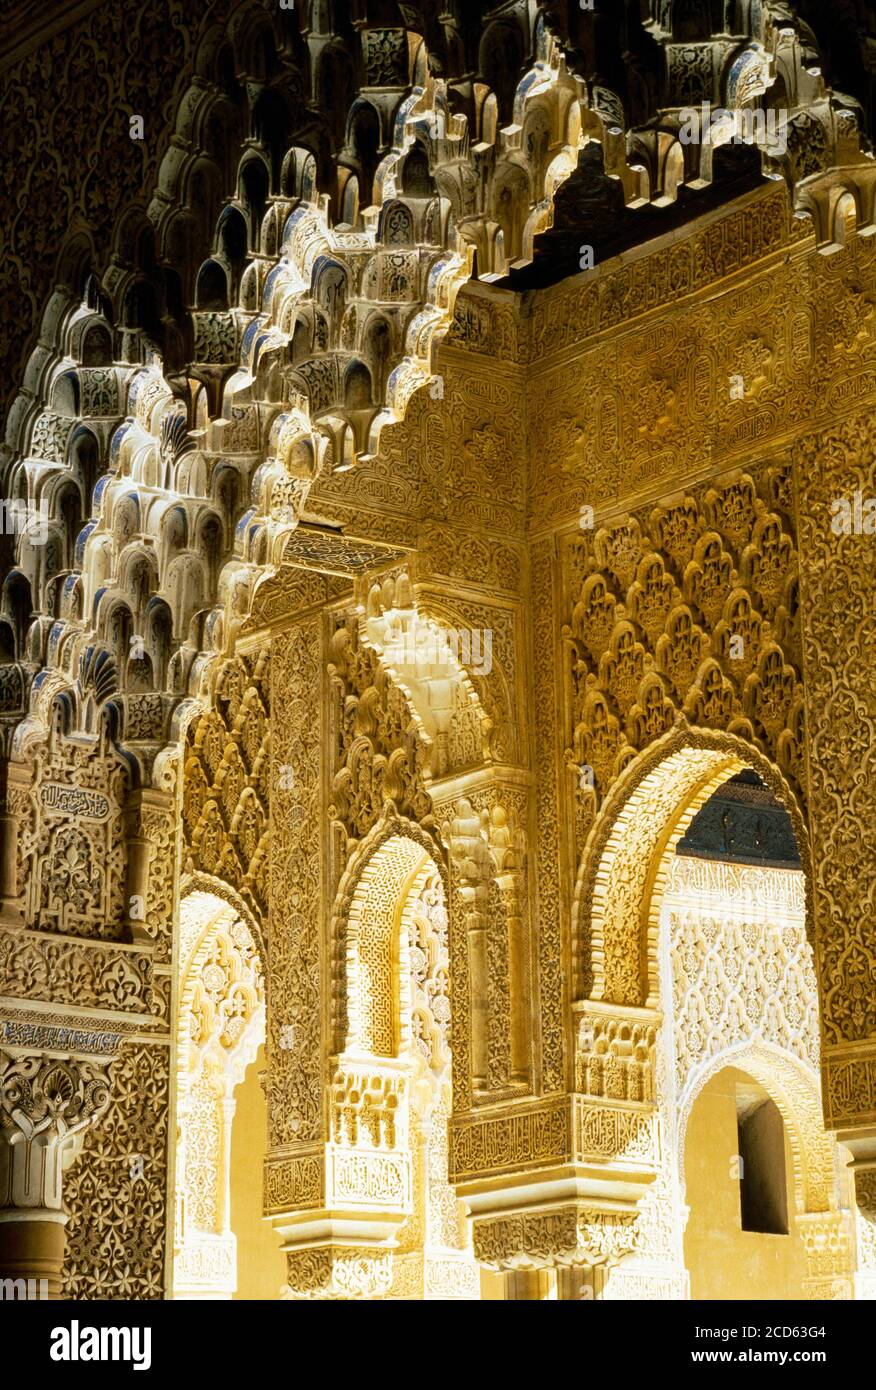 Detalles de estilo árabe de puertas y columnas arqueadas, Alhambra, Granada, Andalucía, España Foto de stock